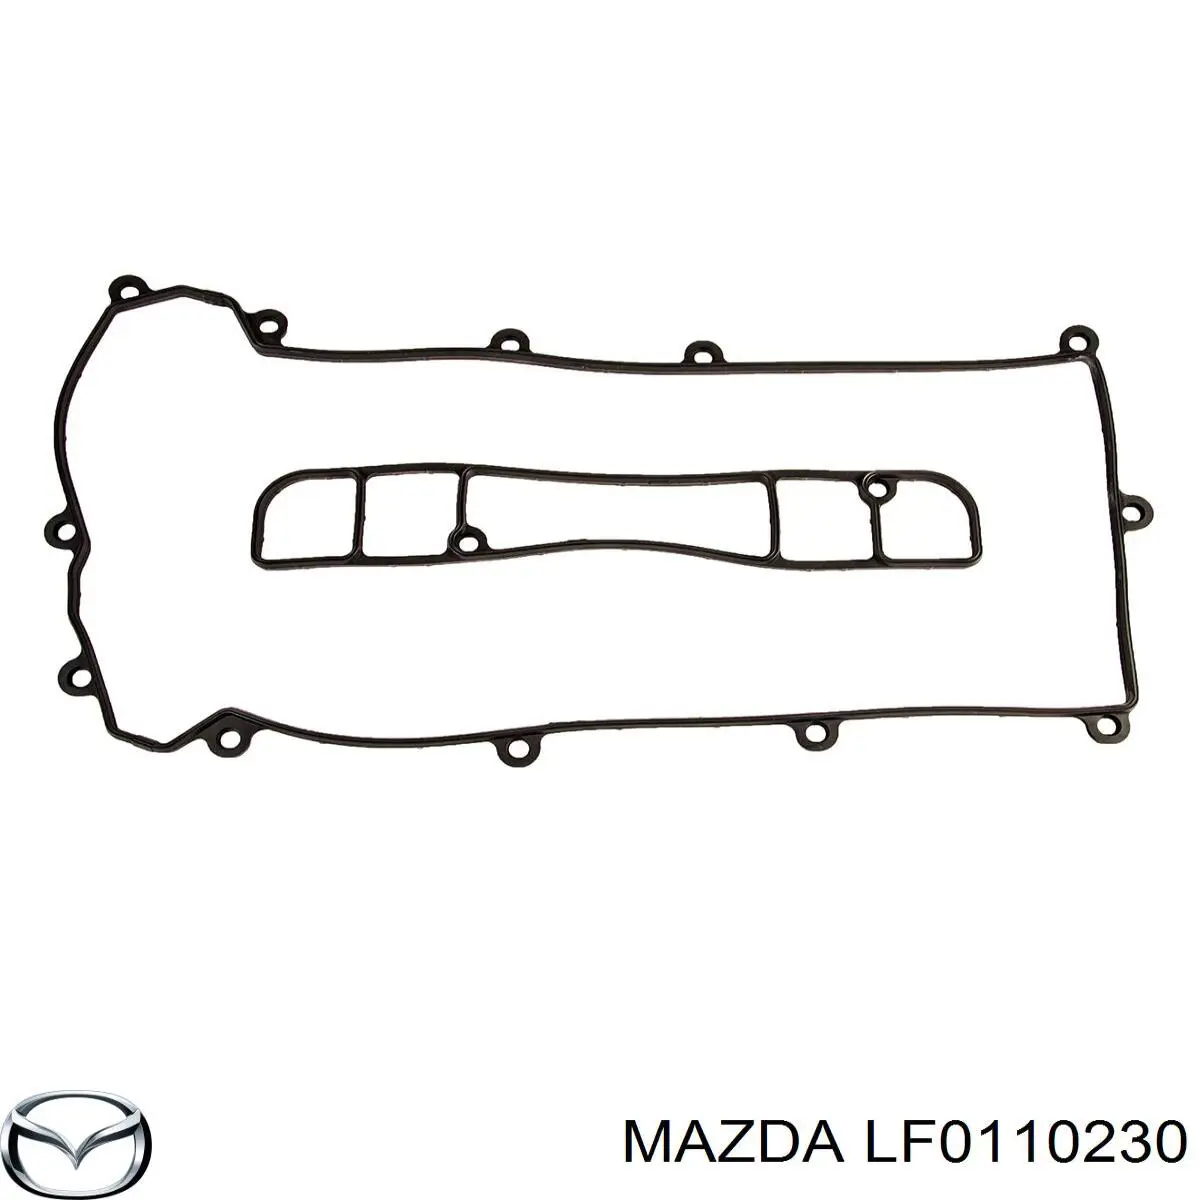 LF0110230 Mazda juego de juntas, tapa de culata de cilindro, anillo de junta